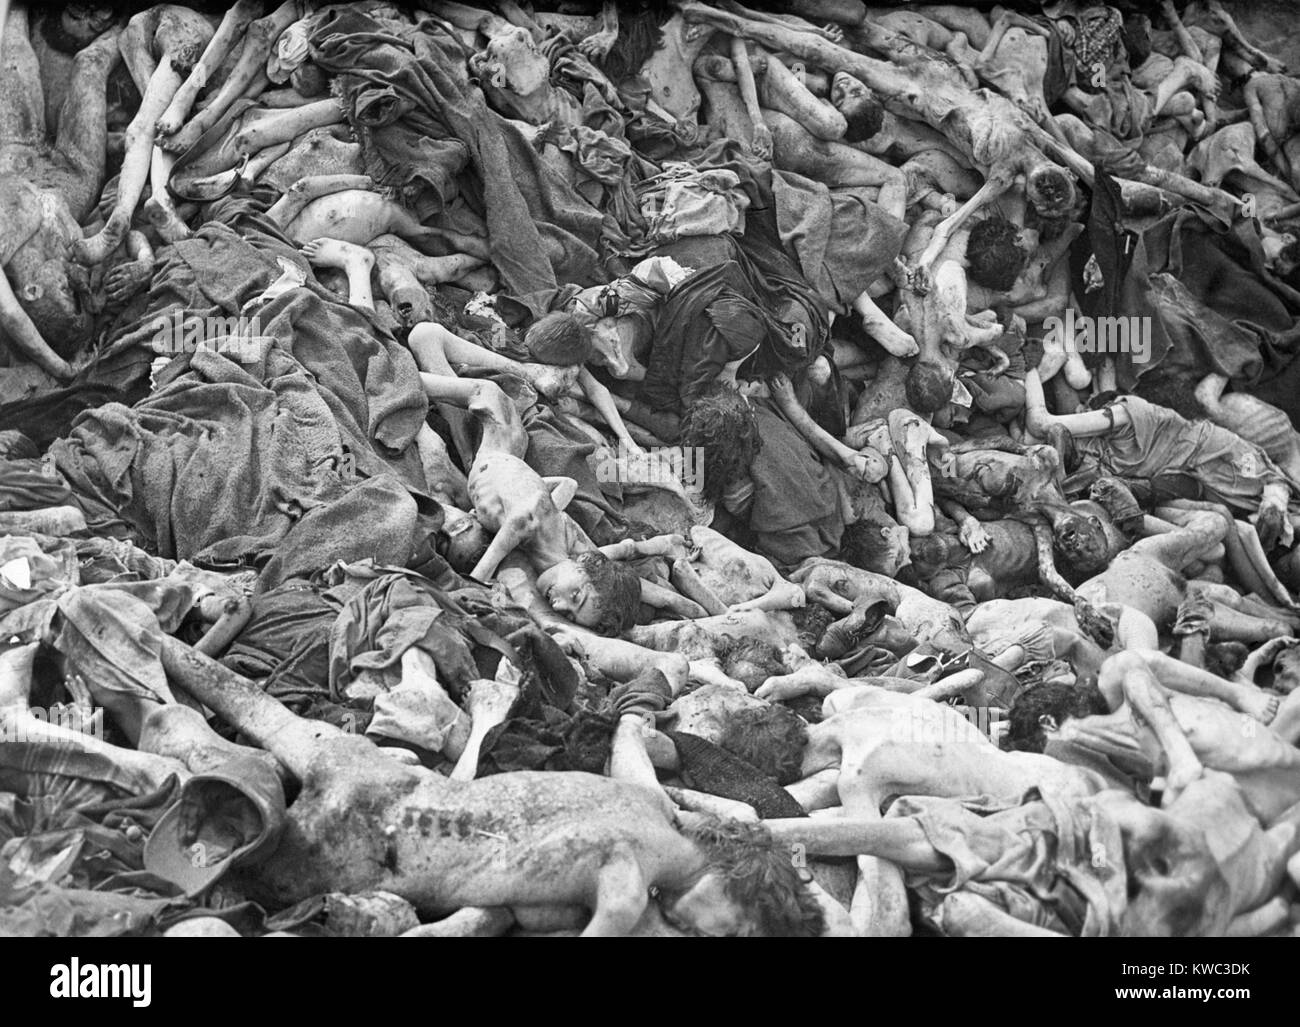 Gemeinsames Grab für die Opfer der Nazideutschen Konzentrationslager Belsen, April 1945. In den Wochen vor der Befreiung, schwächen Häftlinge starben durch die Hunderte täglich von Typhus, Typhus und Ruhr, Weltkrieg 2 (BSLOC 2015 13 6) Stockfoto